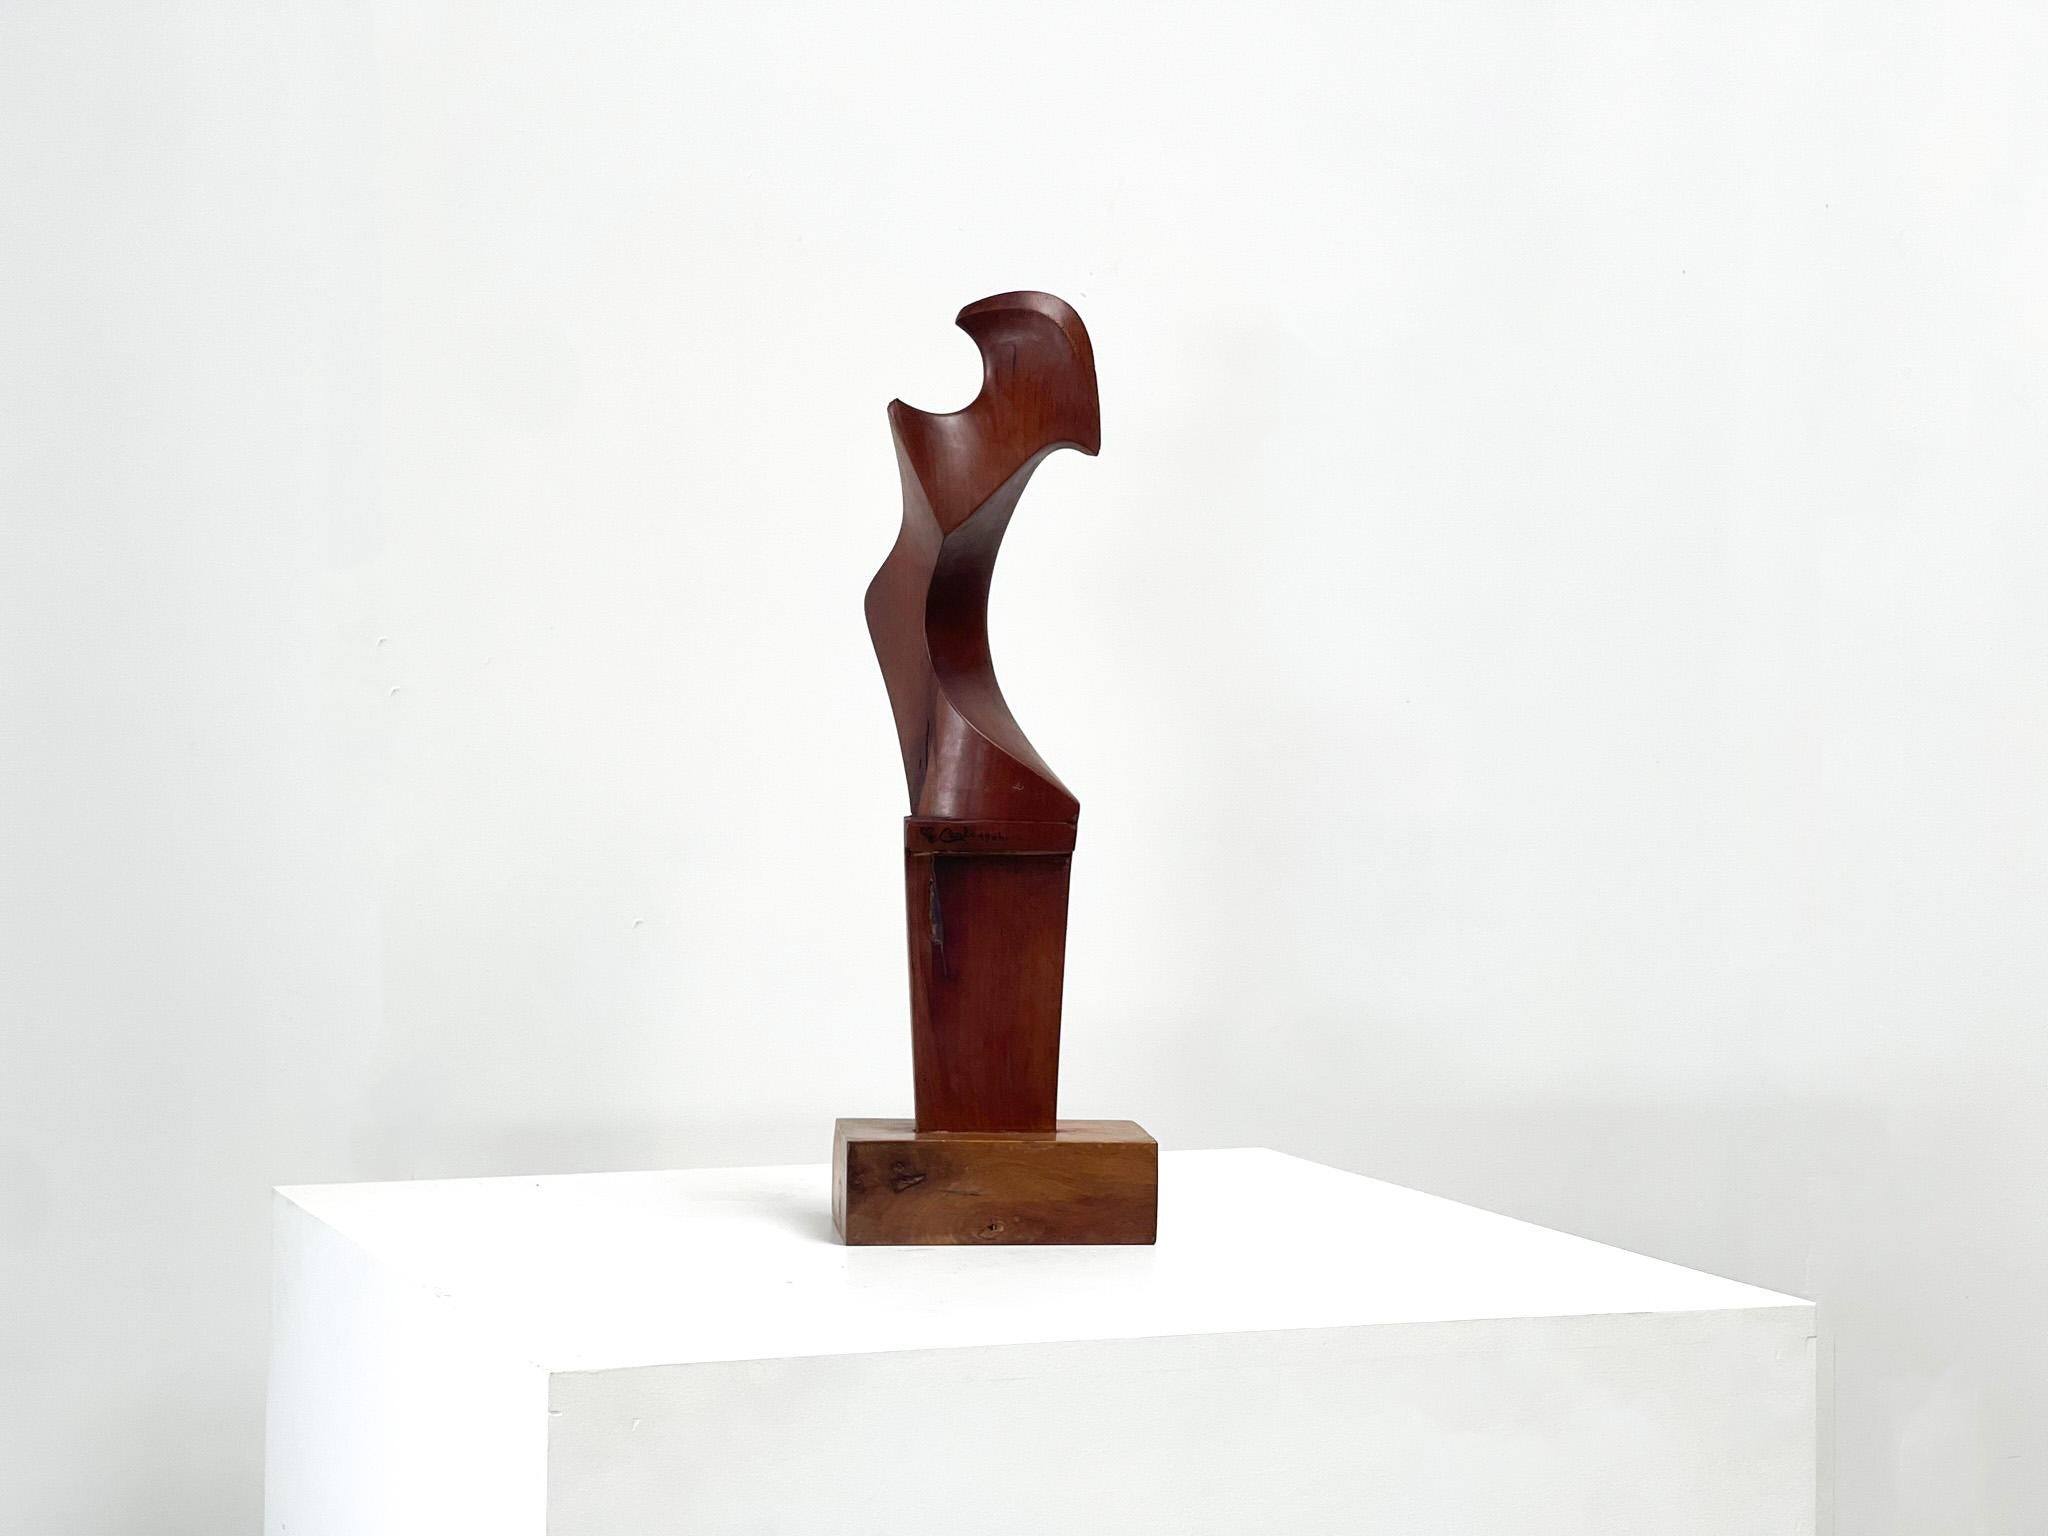 Sehr schön gestaltete Holzskulptur von Giuseppe Carli. Die Skulptur wurde im Jahr 1964 geschaffen.  Die Skulptur ist datiert und signiert. Carli war ein venezianischer Bildhauer, der für seine Holzskulpturen sehr berühmt wurde. Seine Skulpturen und